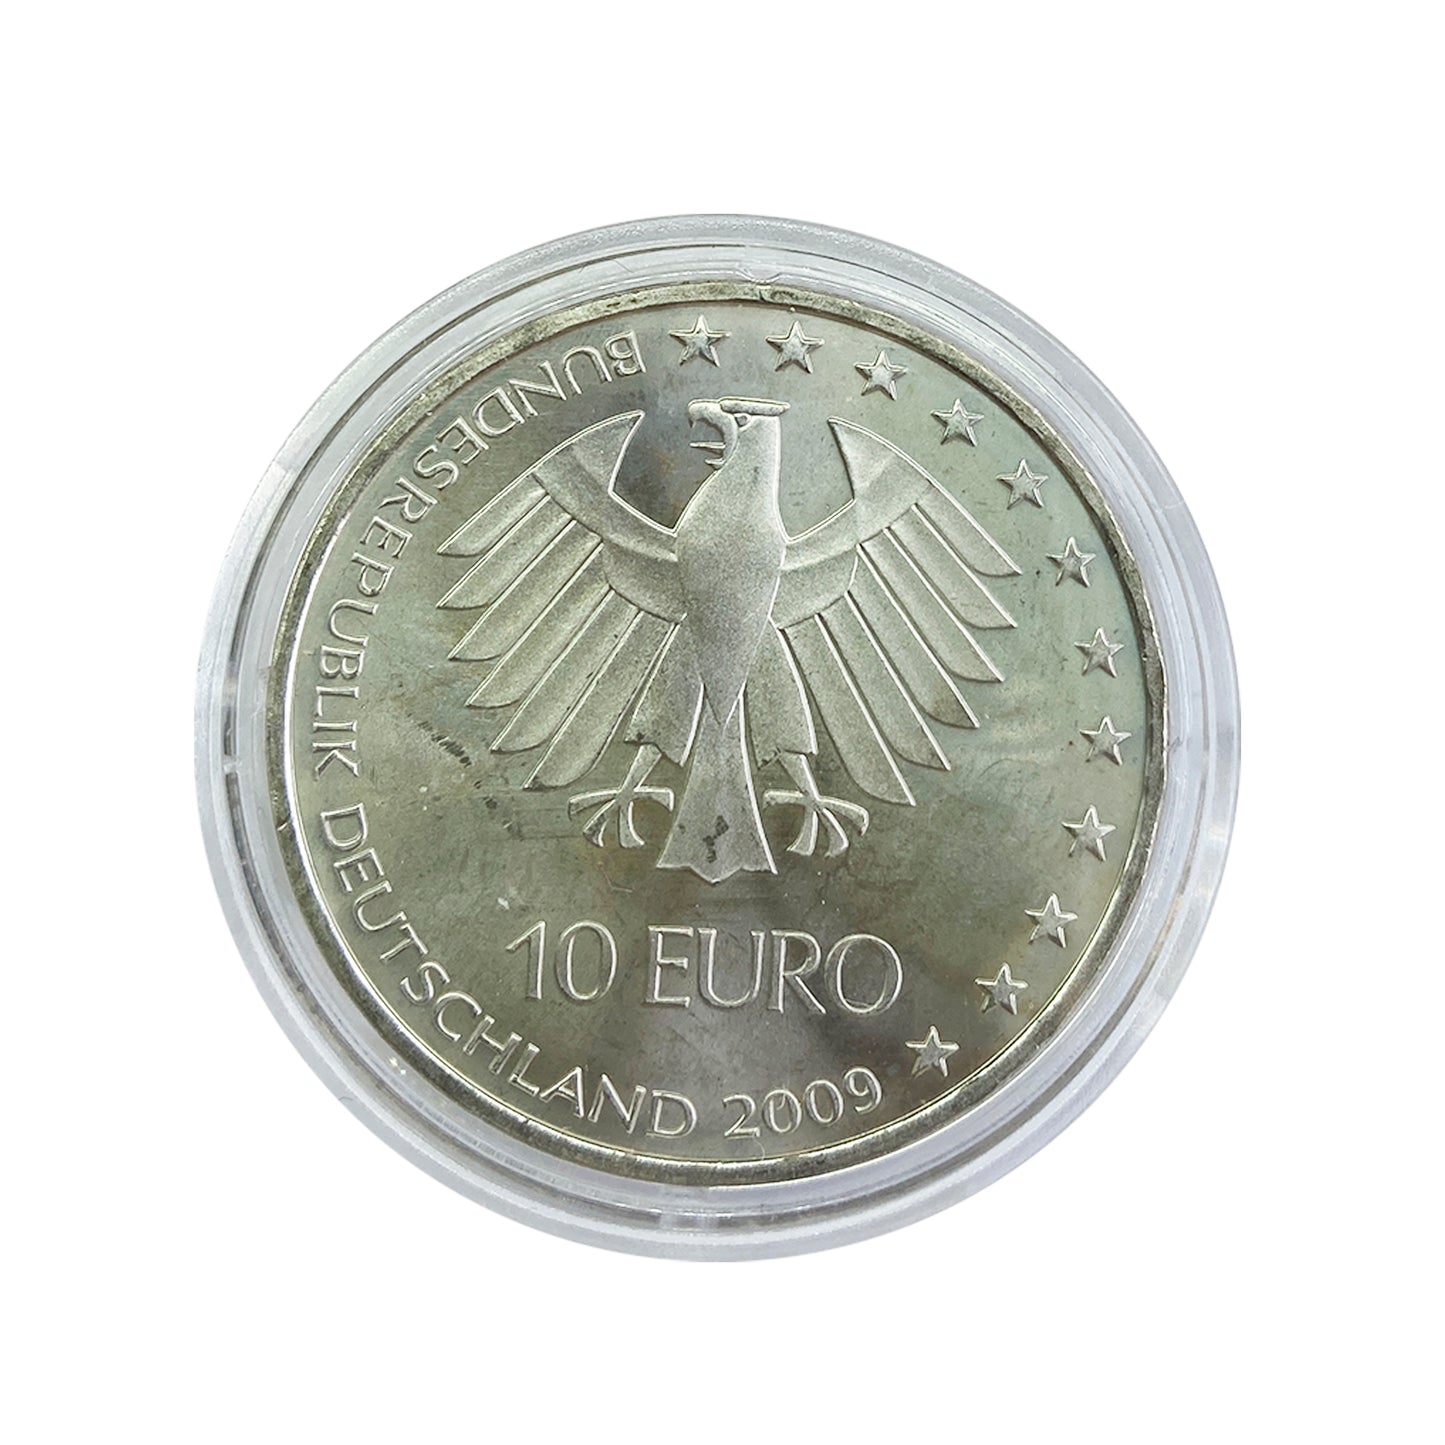 Alemania - Moneda 10 euros plata 2009 - Campeonato del mundo de Atletismo Berlín 2009